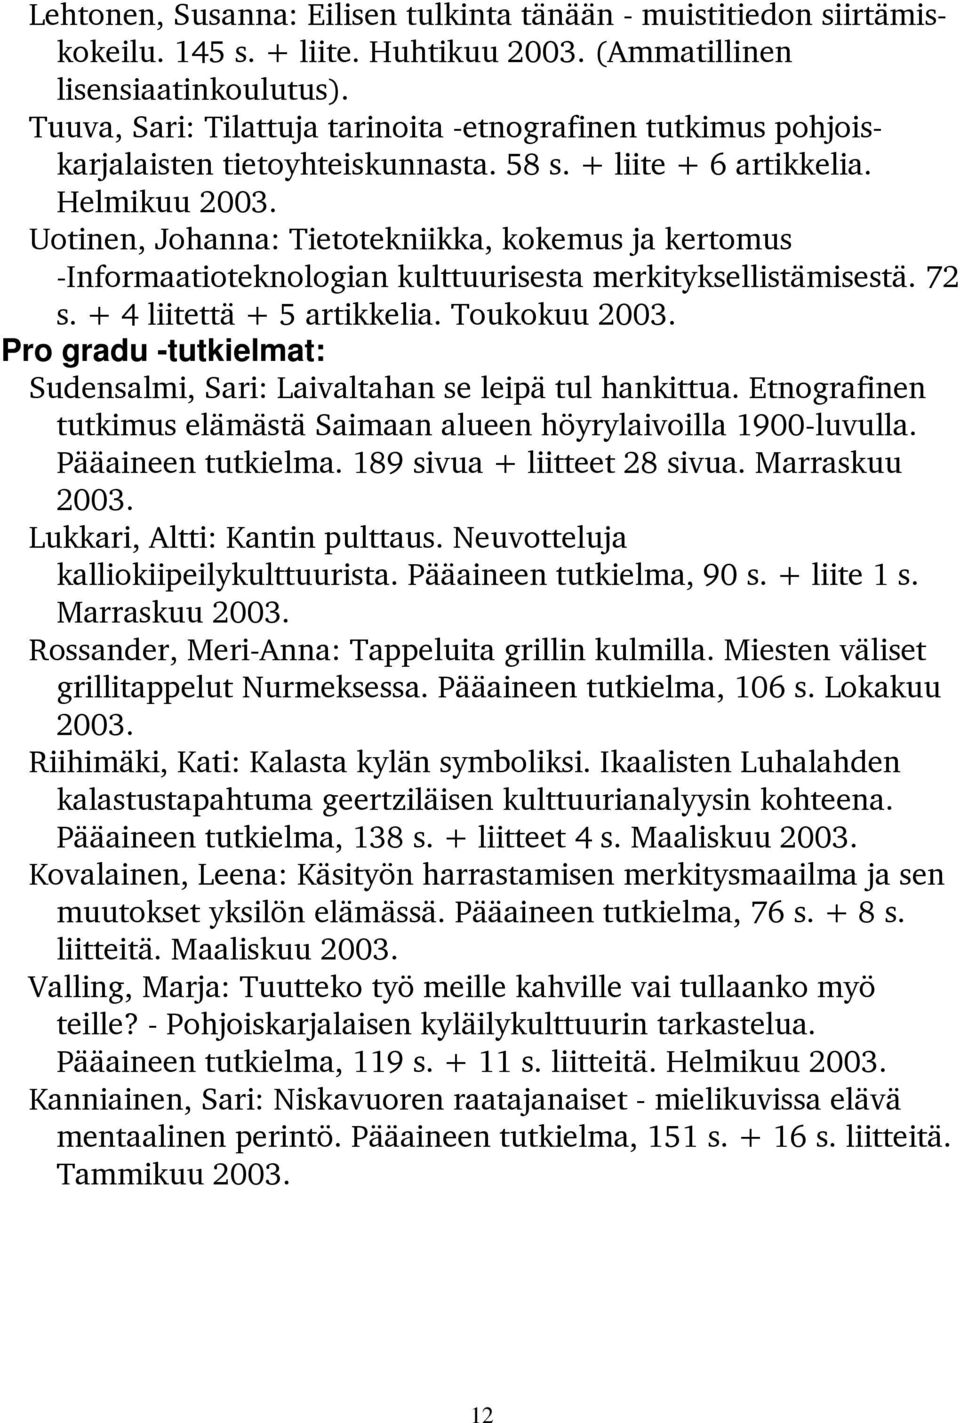 Uotinen, Johanna: Tietotekniikka, kokemus ja kertomus -Informaatioteknologian kulttuurisesta merkityksellistämisestä. 72 s. + 4 liitettä + 5 artikkelia. Toukokuu 2003.